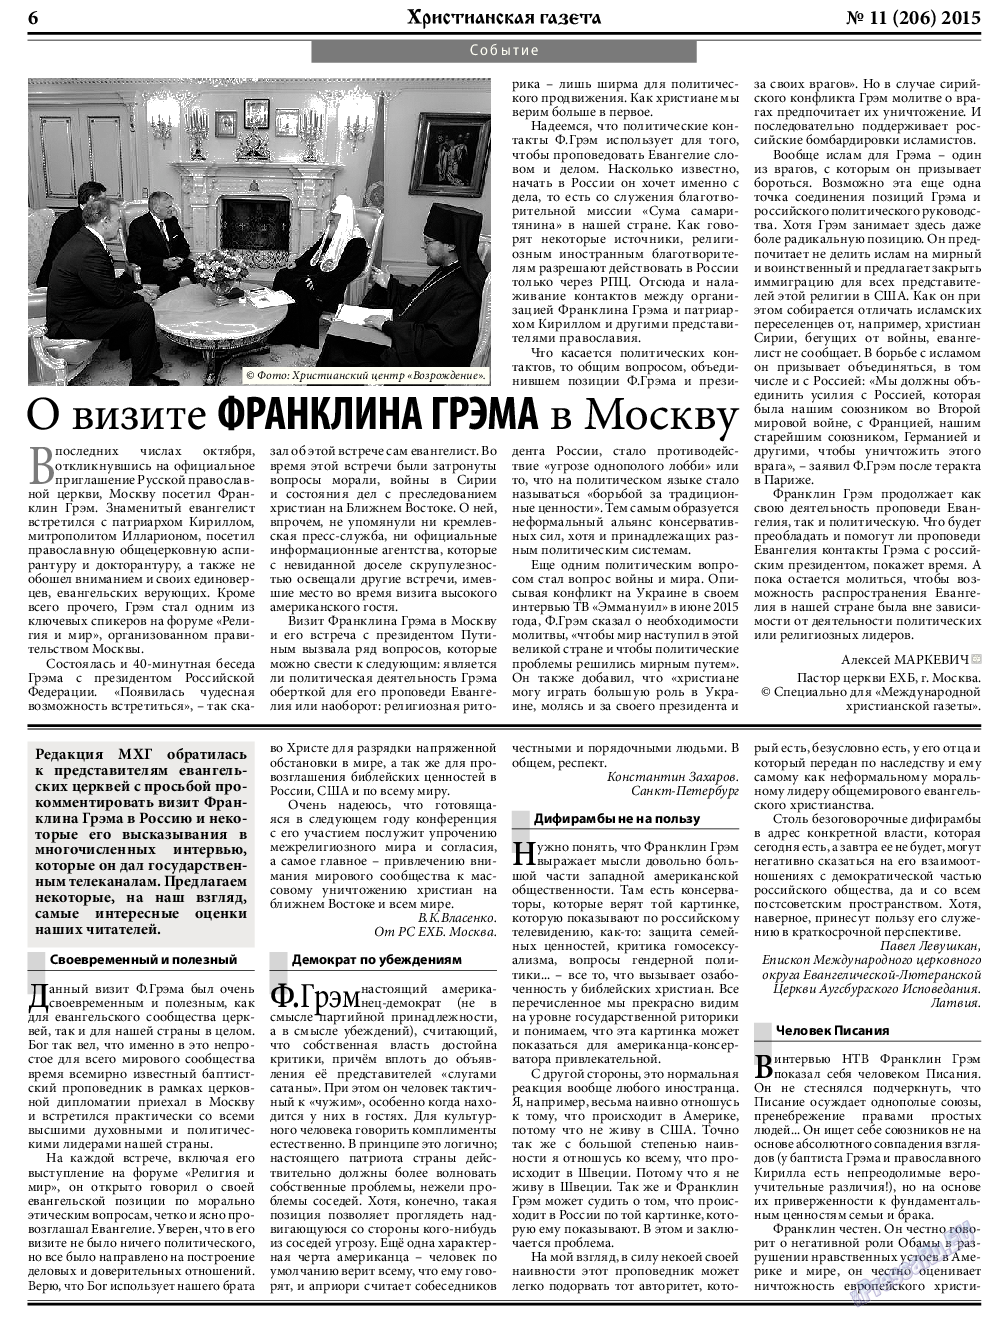 Христианская газета, газета. 2015 №11 стр.6